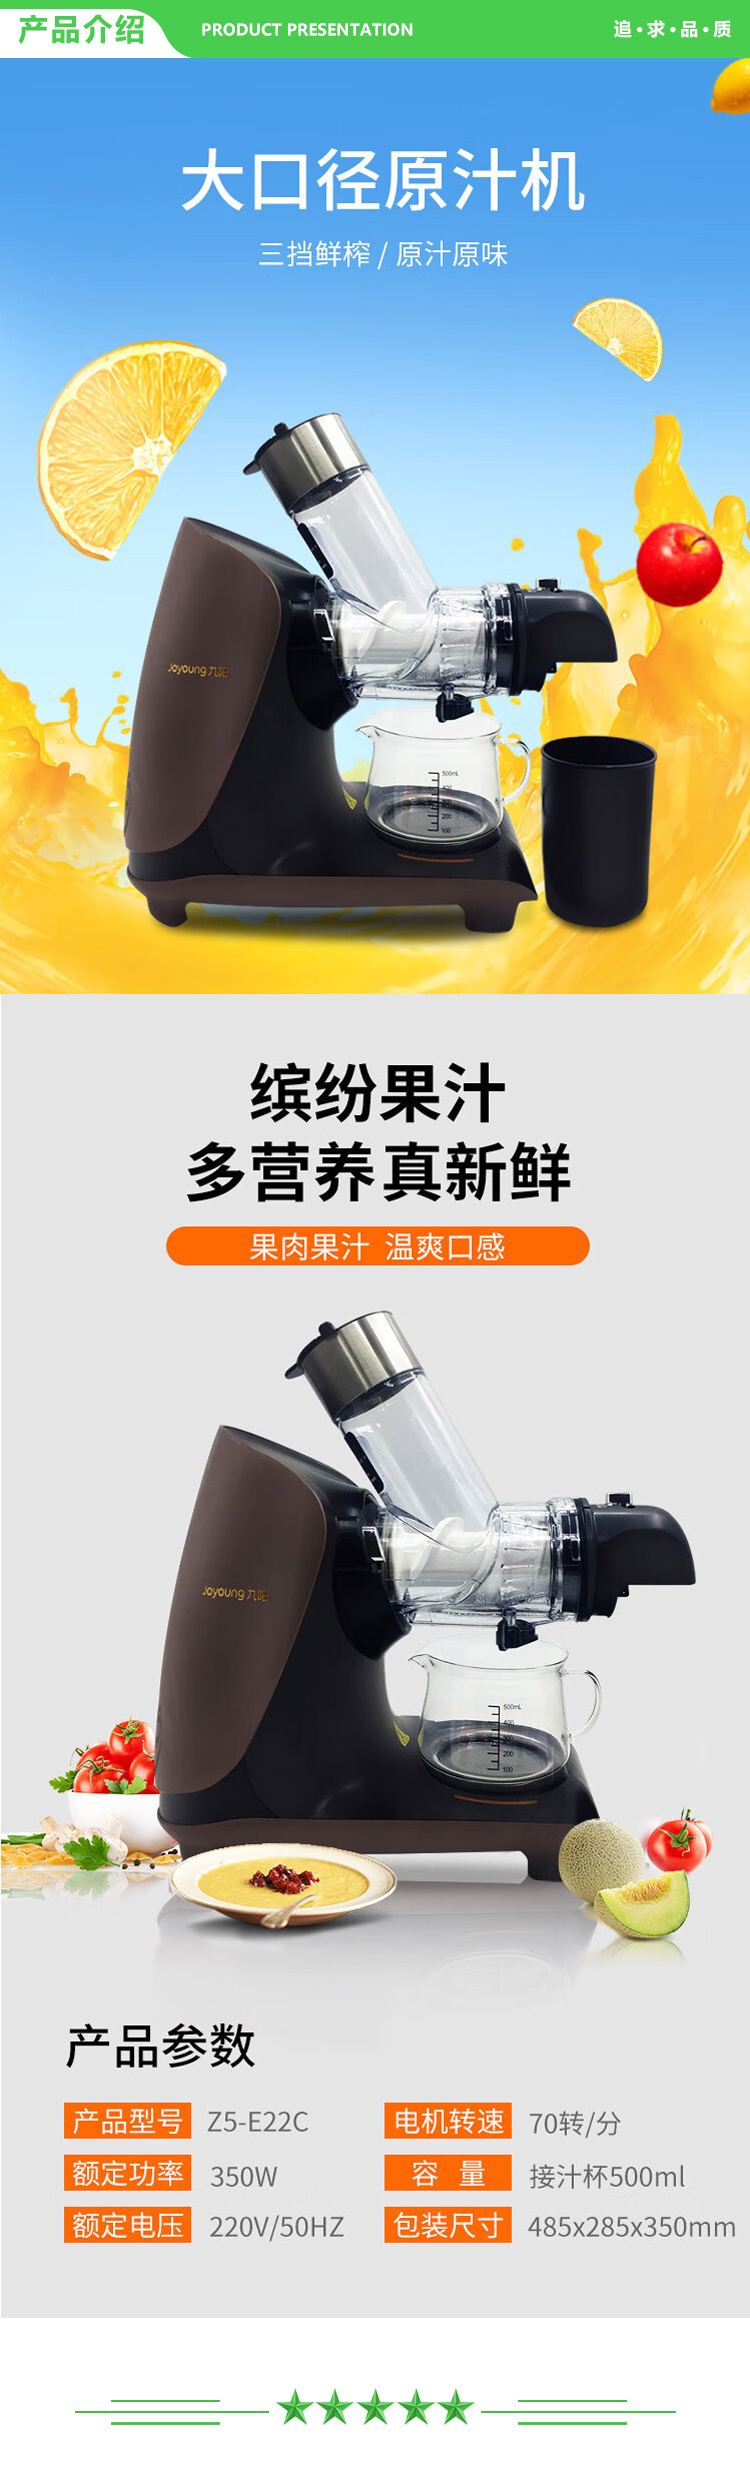 九阳 Joyoung Z5-E22C 榨汁机 全自动多功能原汁机.jpg